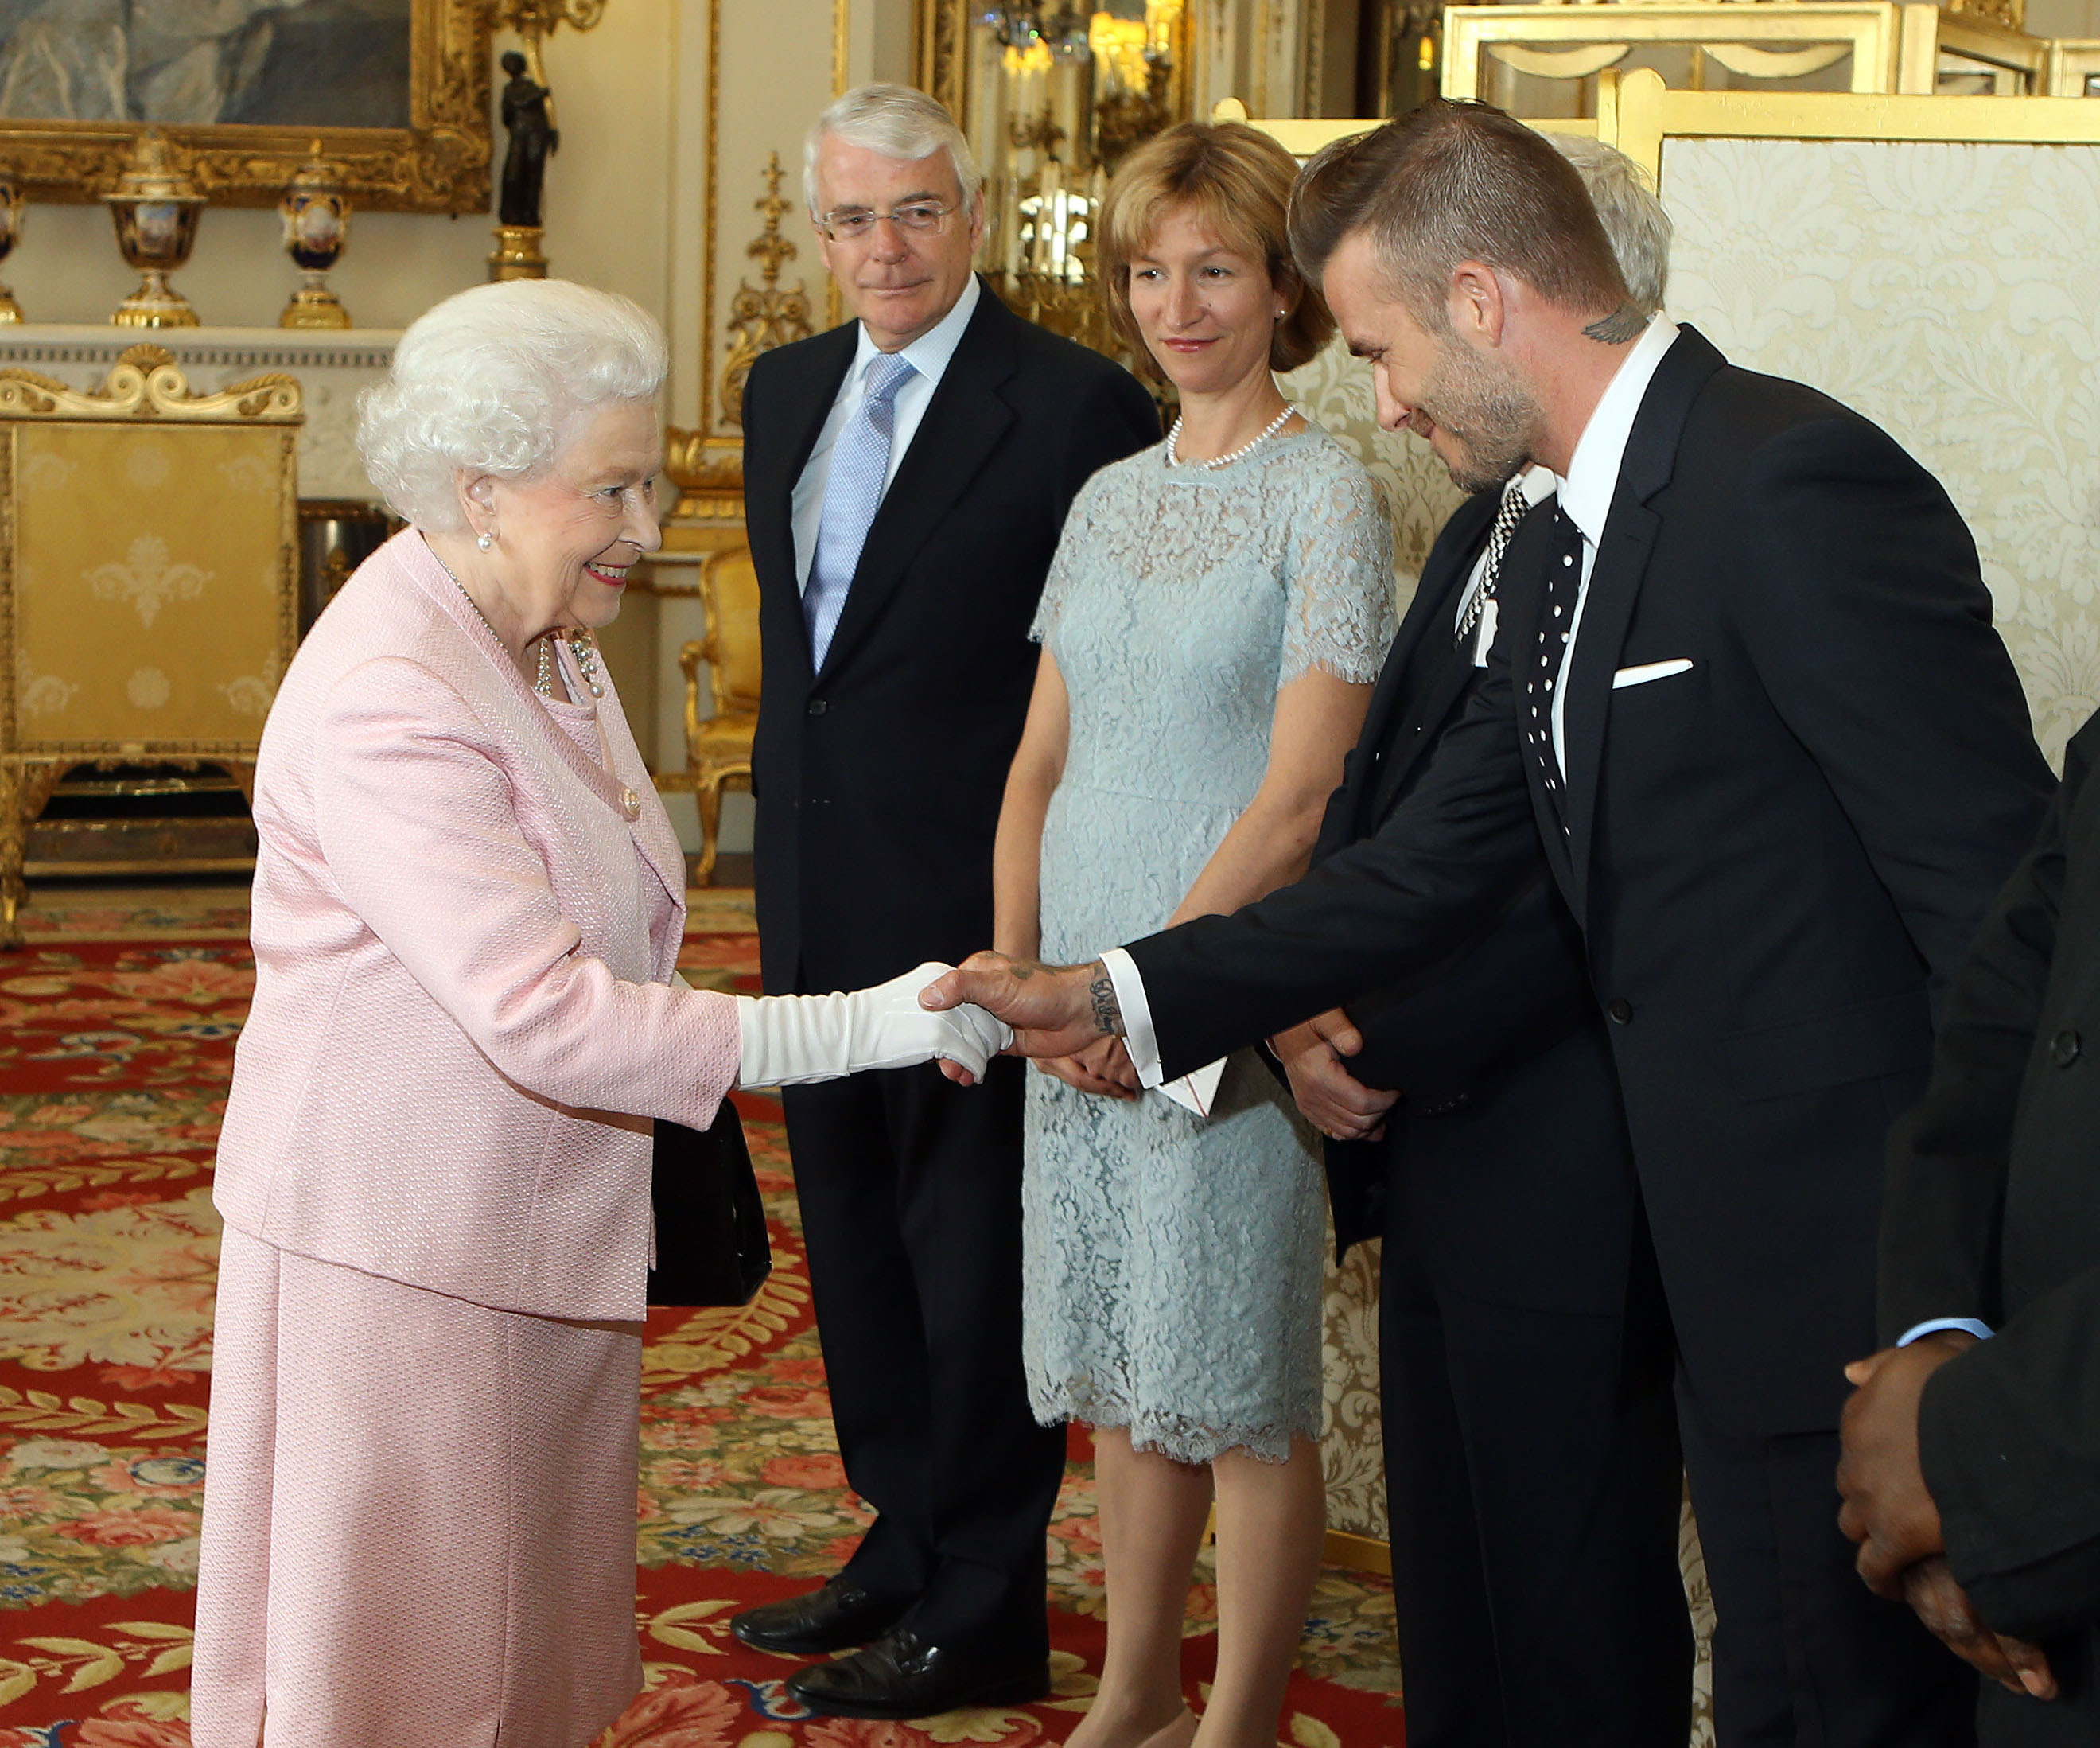 David Beckhan com rainha Elizabeth II. Créditos: Getty Images 